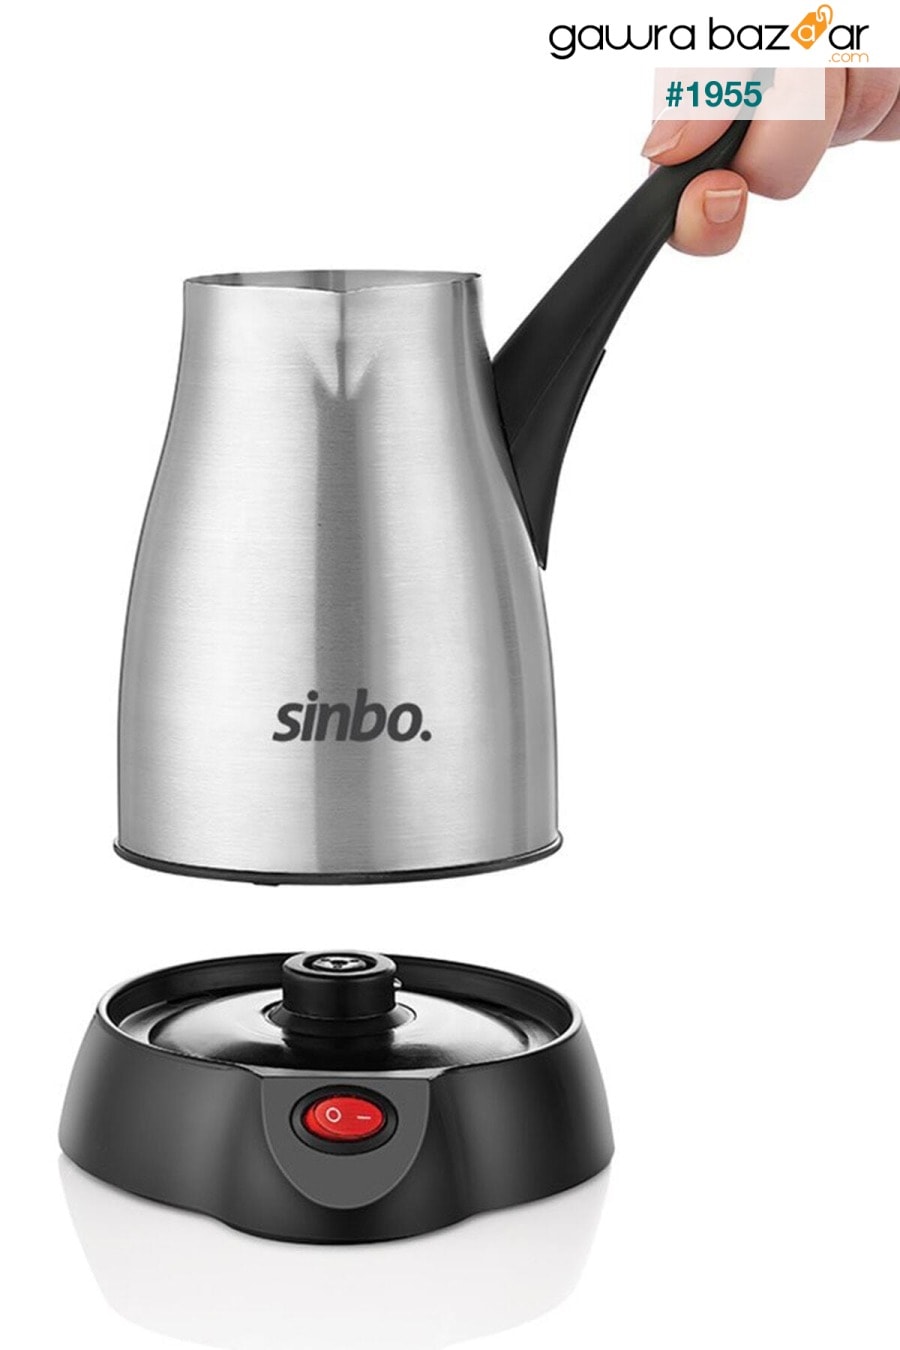 Scm-2957 إبريق قهوة كهربائي صانع القهوة Inox Sinbo 1